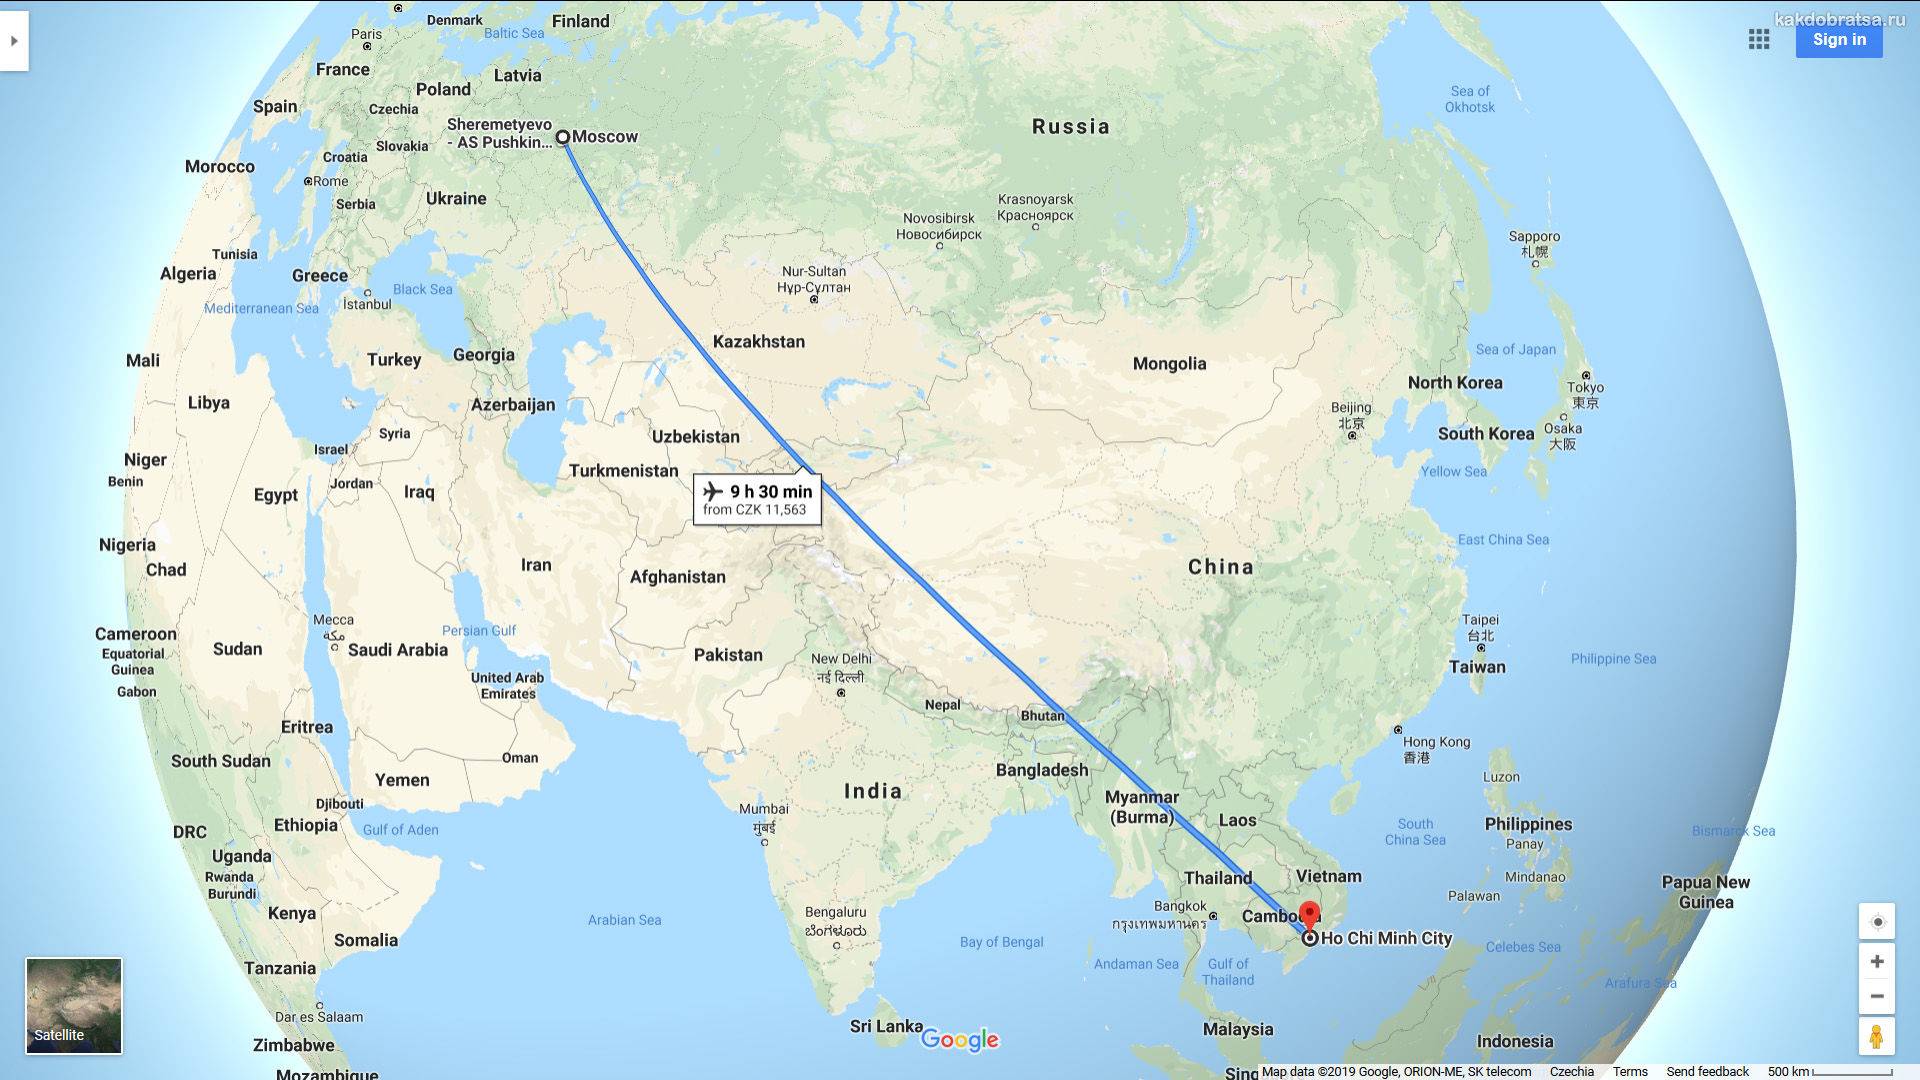 Сколько часов лететь в тайланд из городов россии и украины?